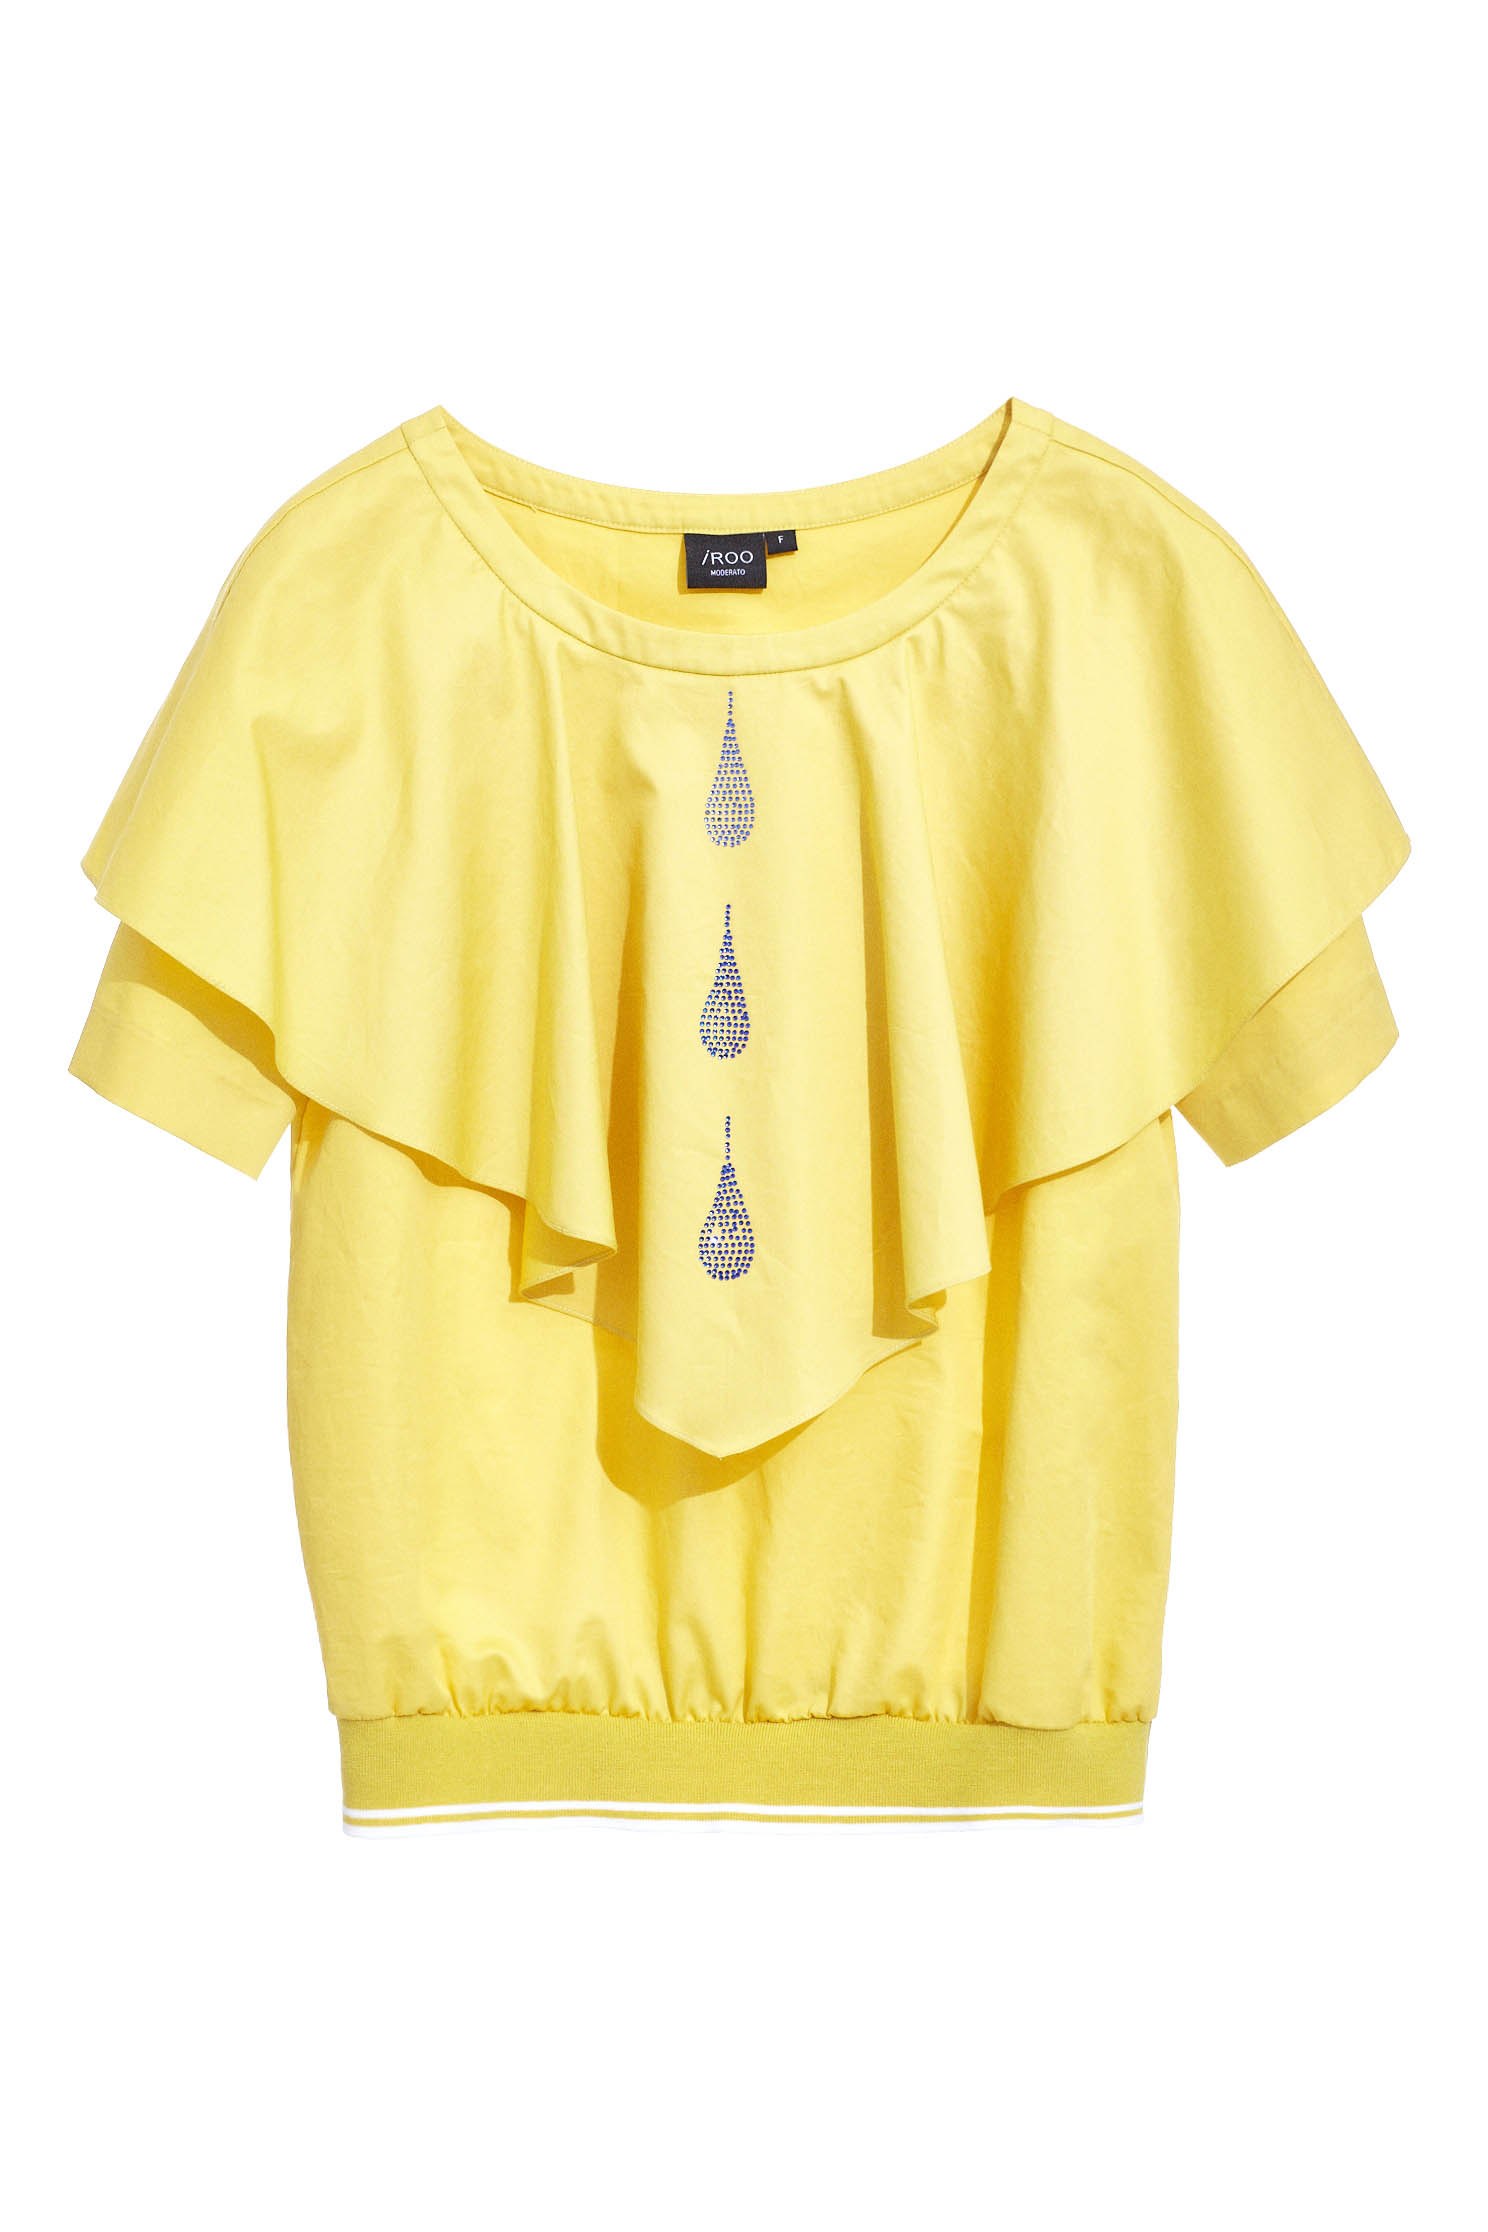 黃色大荷葉水滴流行造型短袖上衣黃色大荷葉水滴流行造型短袖上衣,上衣,春夏穿搭,短袖上衣,荷葉